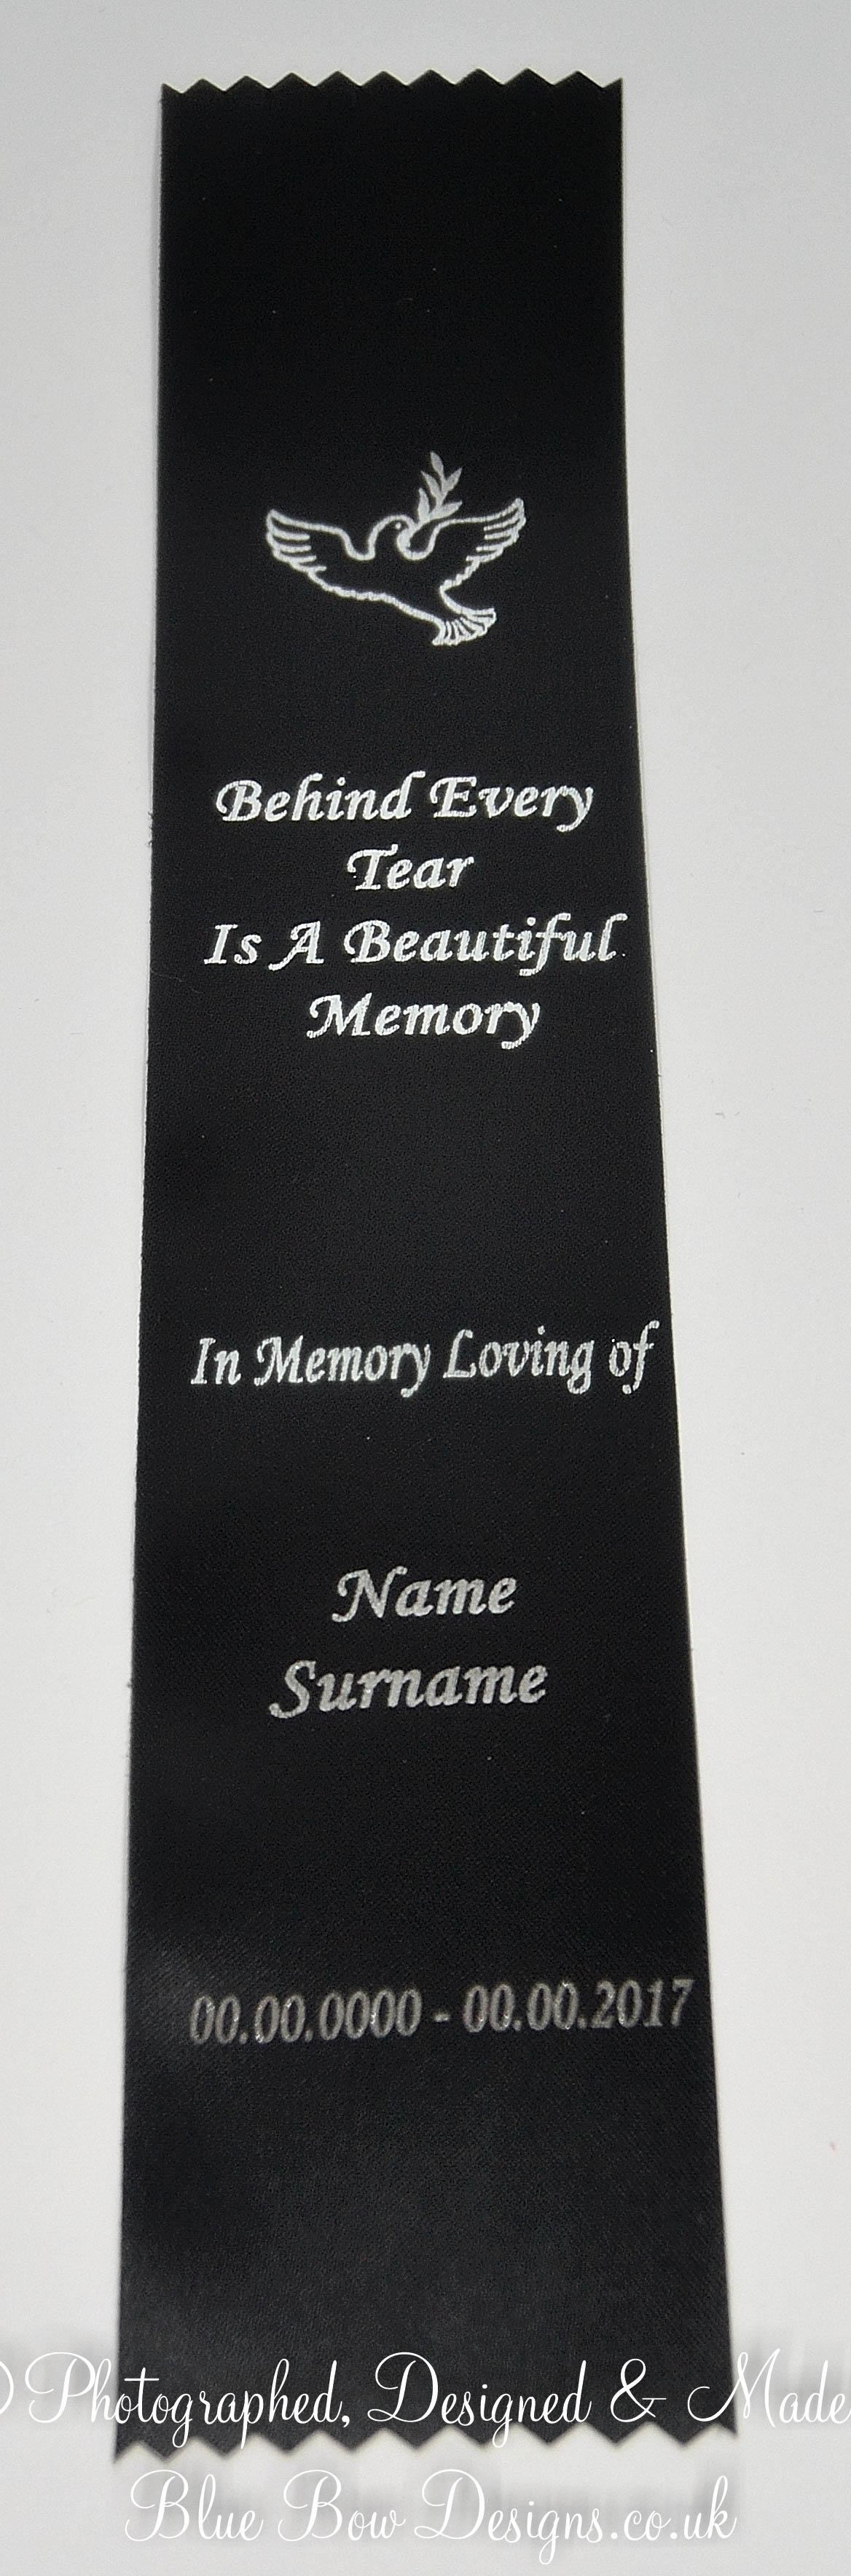 Black and gold funeral memorial bookmark